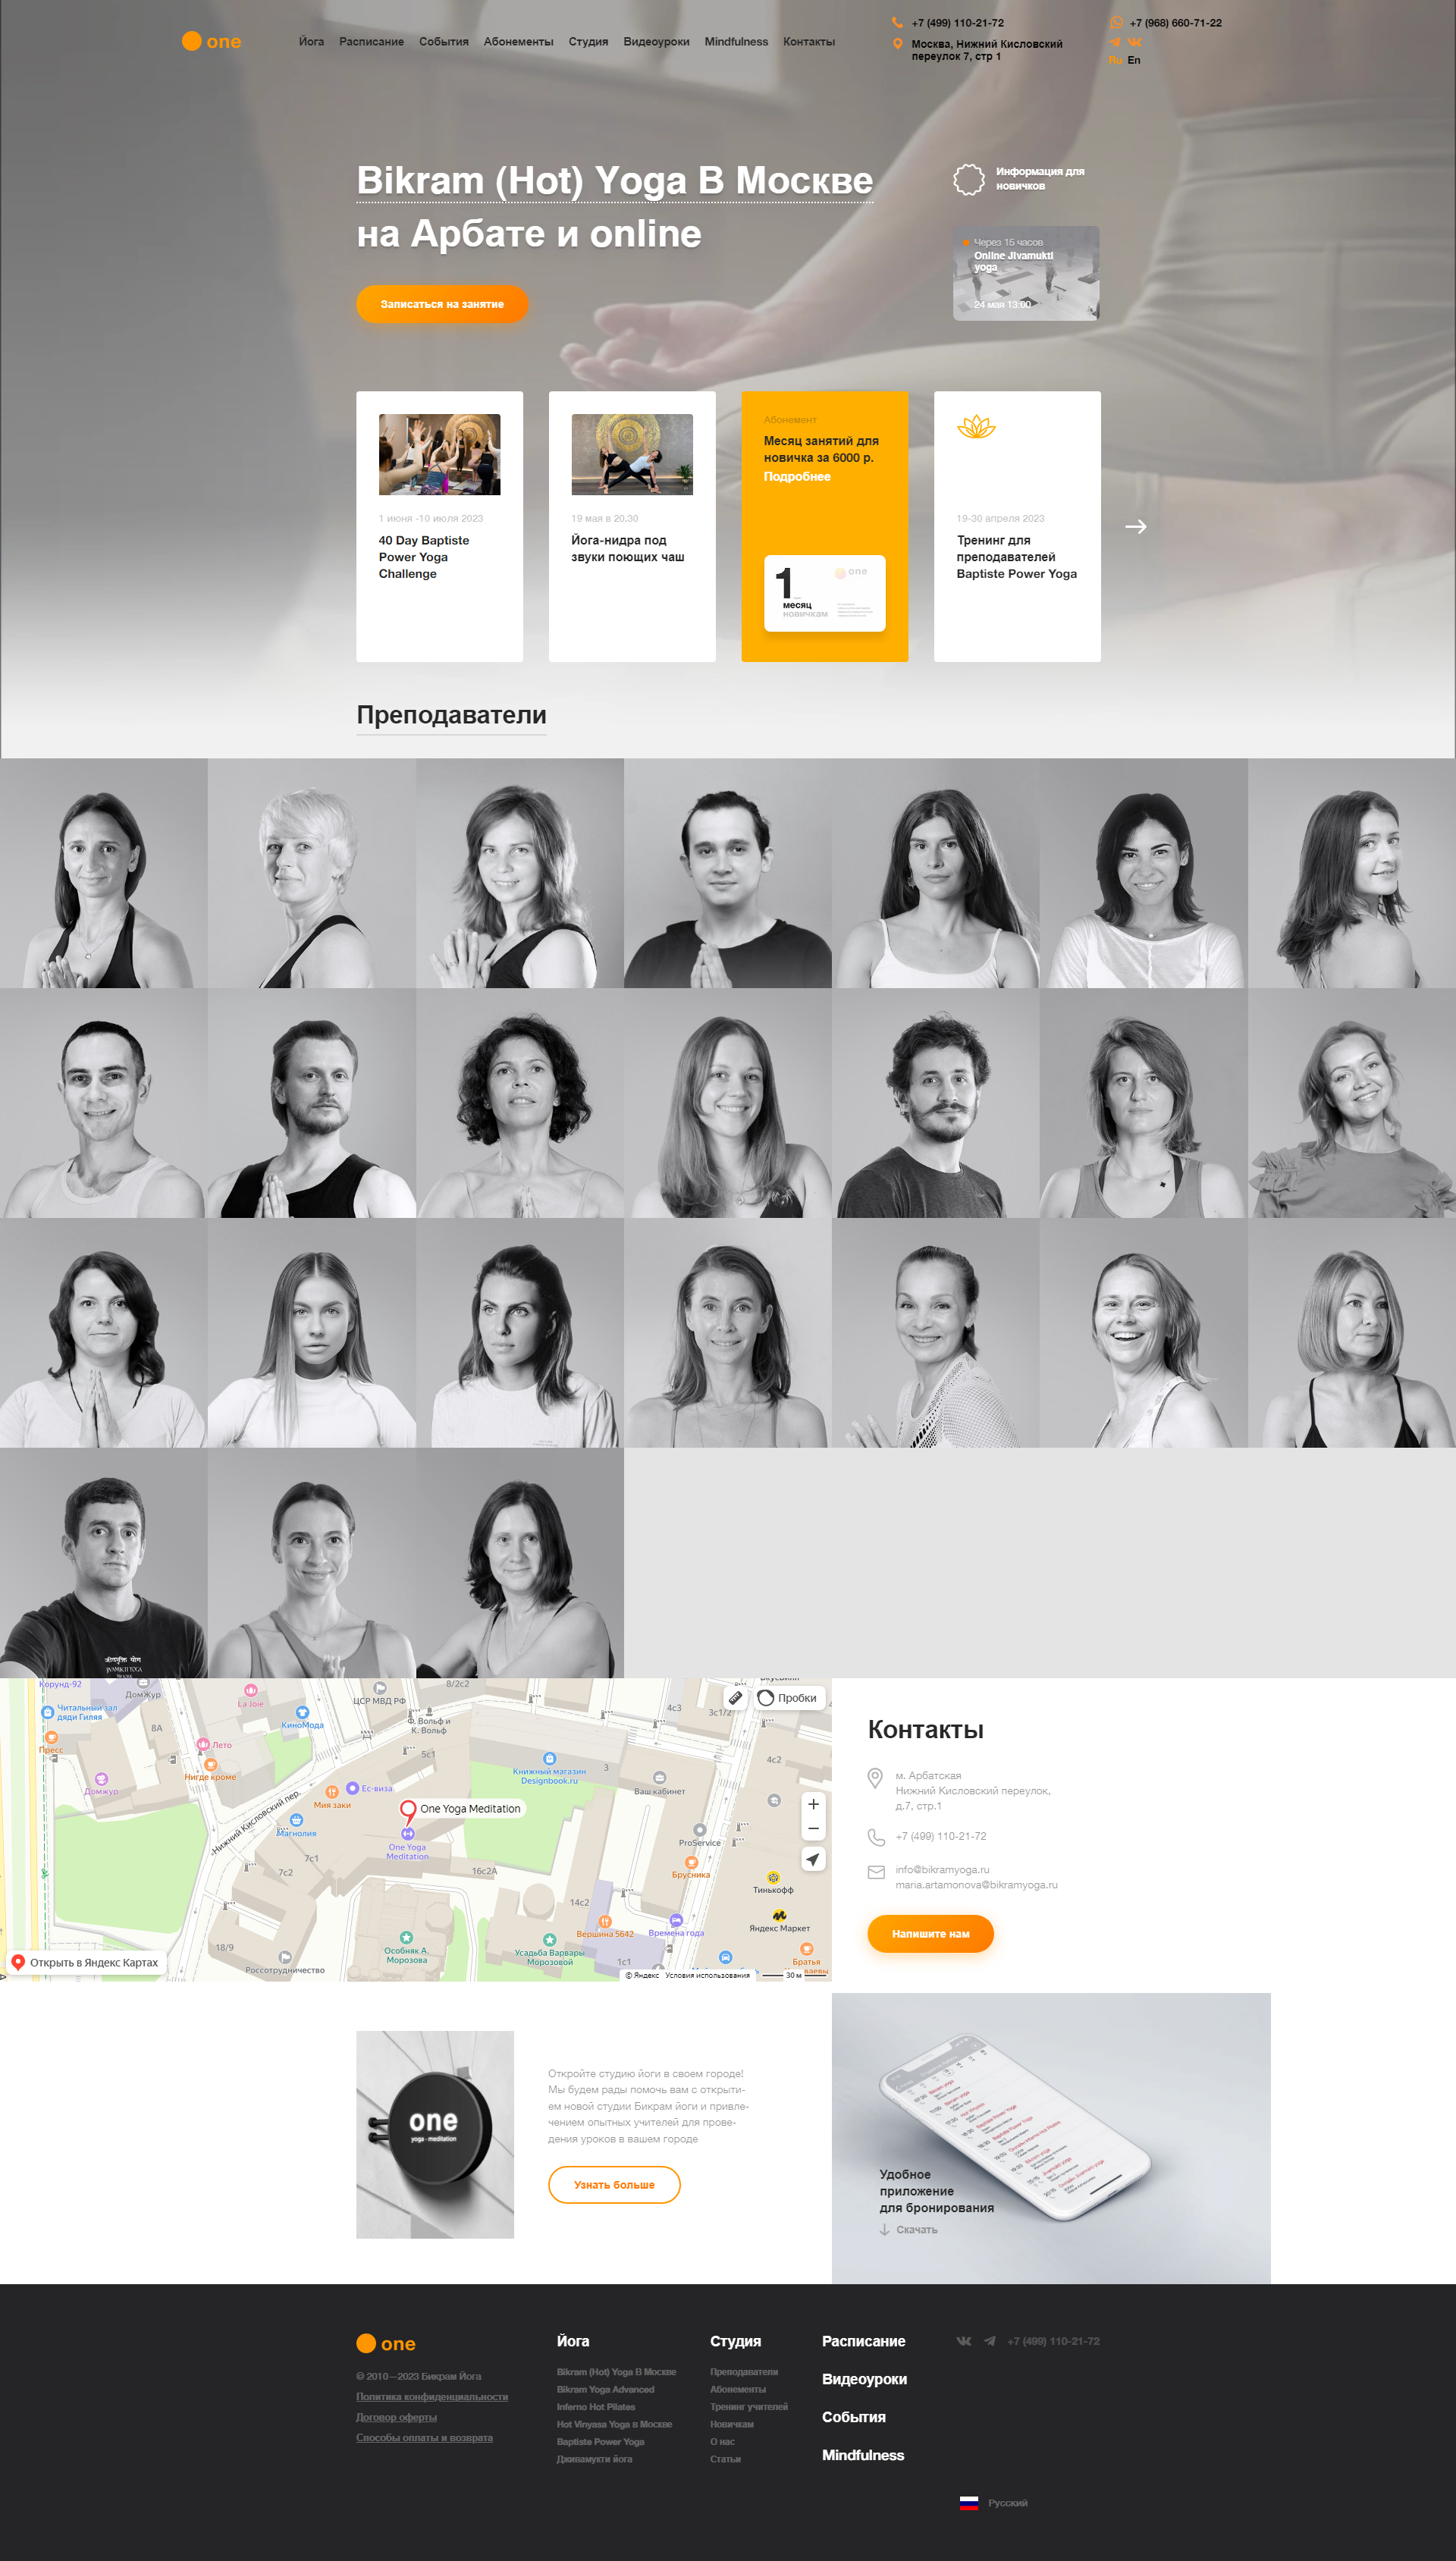 Пример oneyogameditation.ru сайта из рекламной выдачи